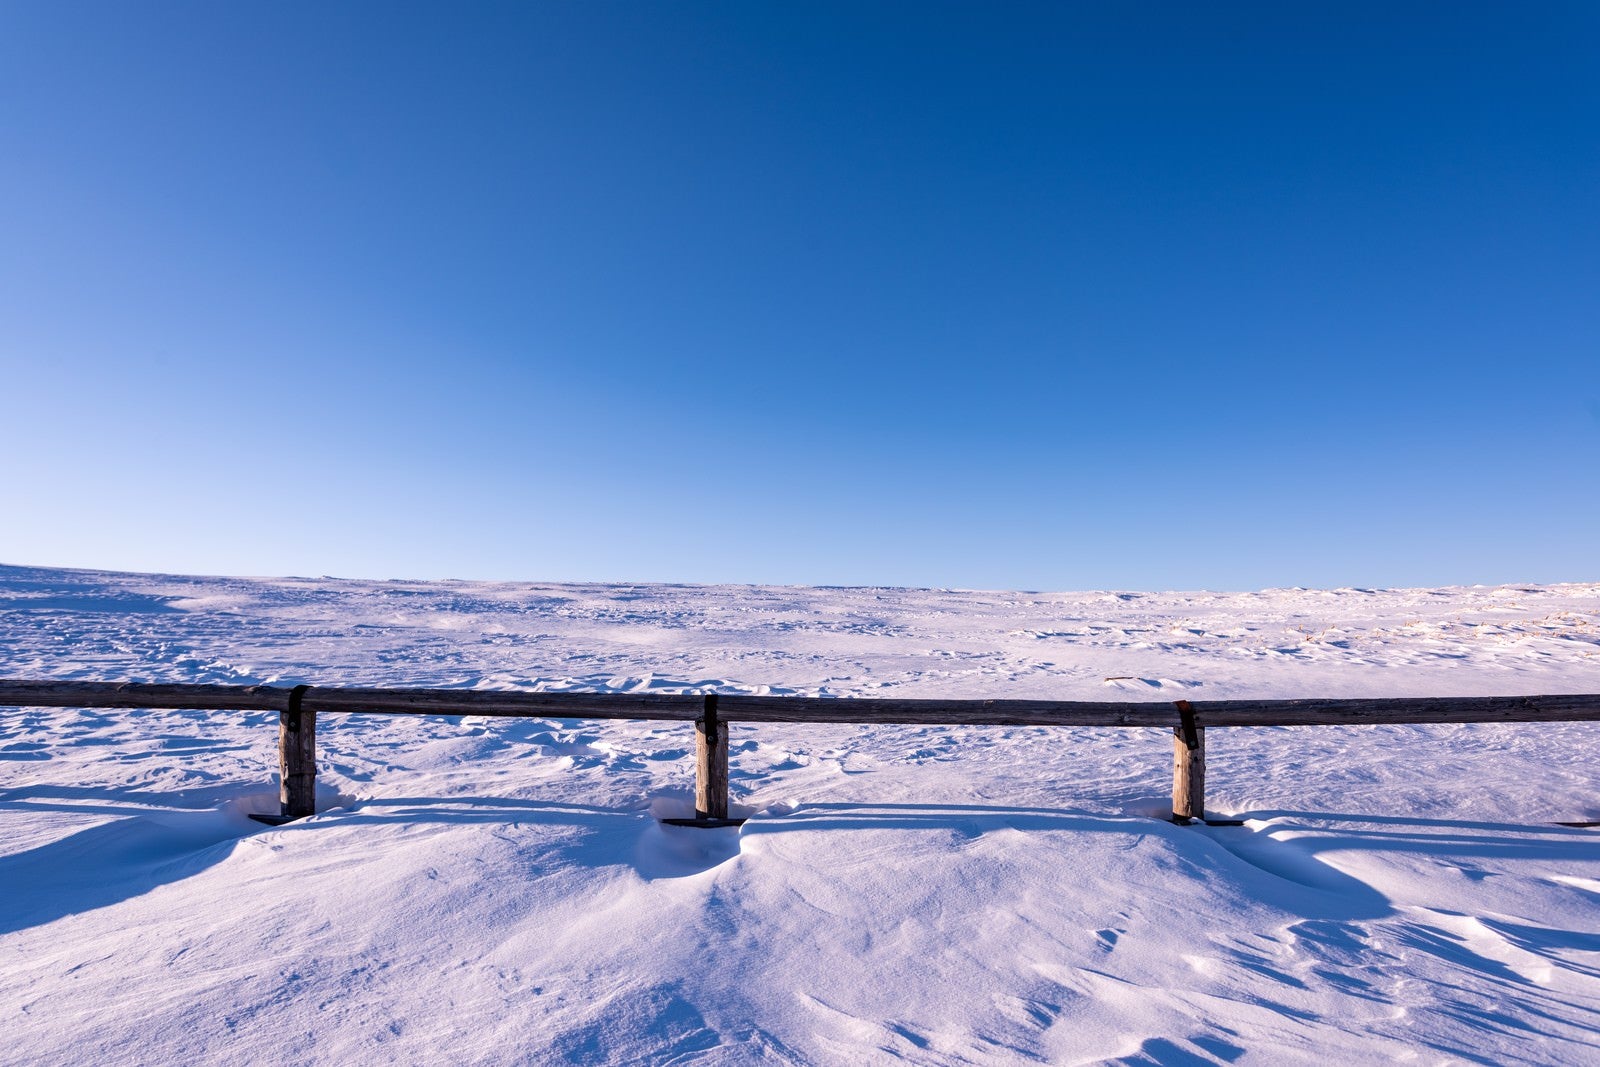 「雲一つない青空と雪原」の写真